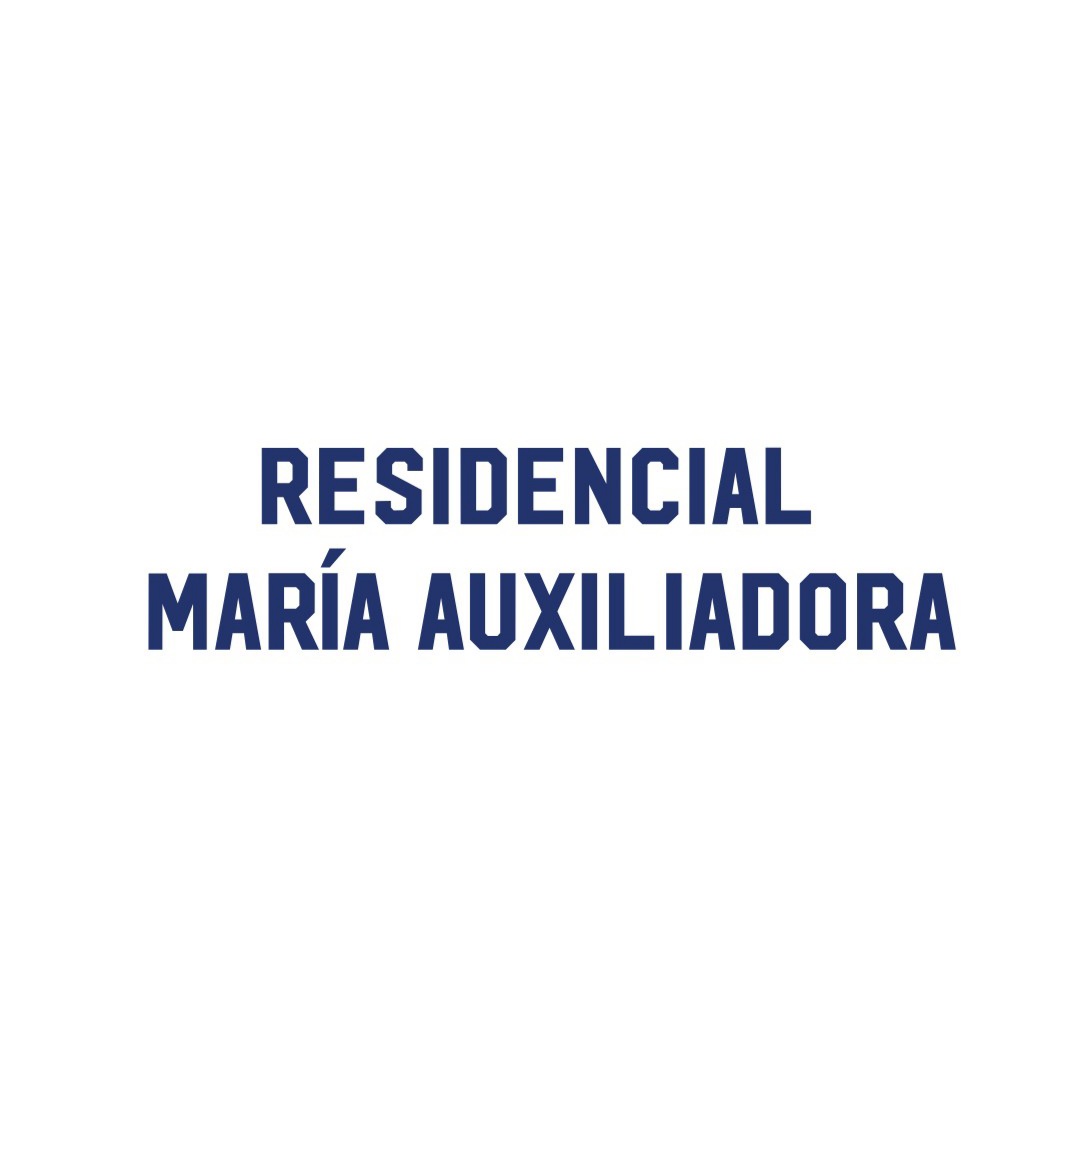 Residencial María Auxiliadora